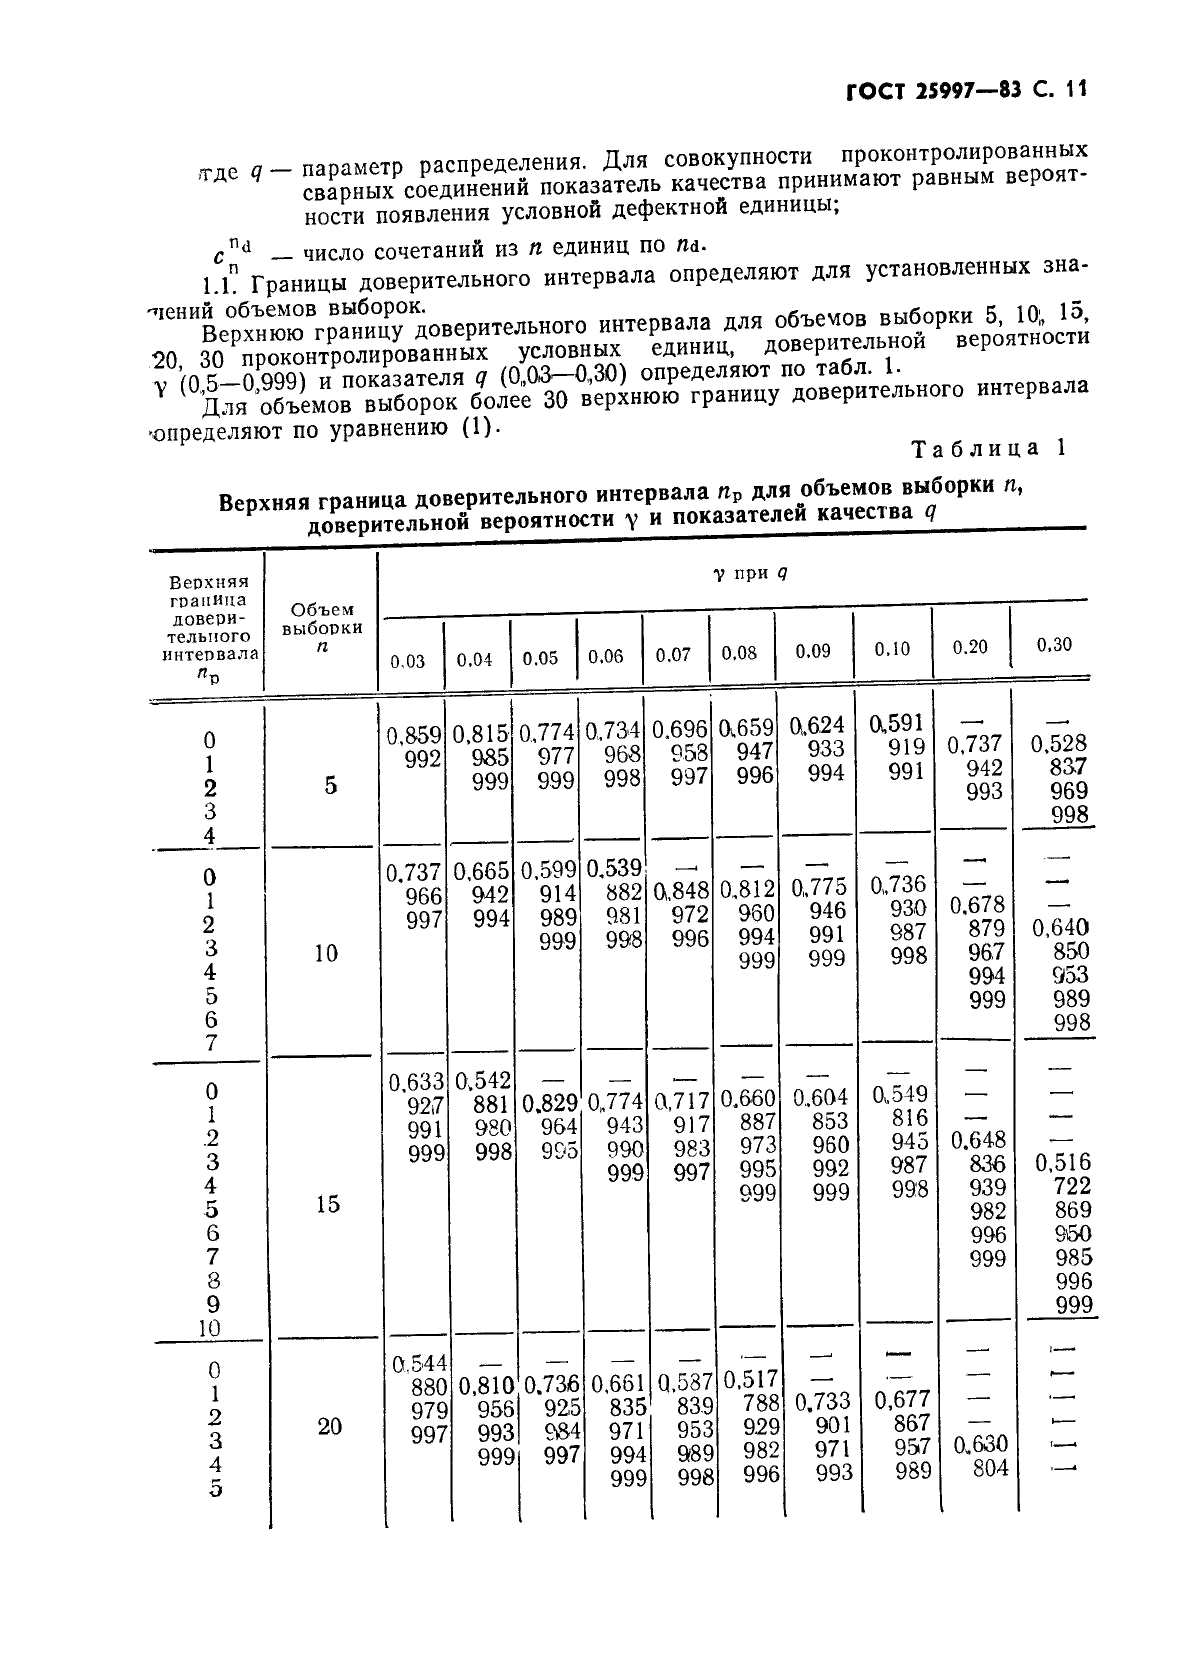 ГОСТ 25997-83 Сварка металлов плавлением. Статистическая оценка качества по результатам неразрушающего контроля (фото 12 из 18)